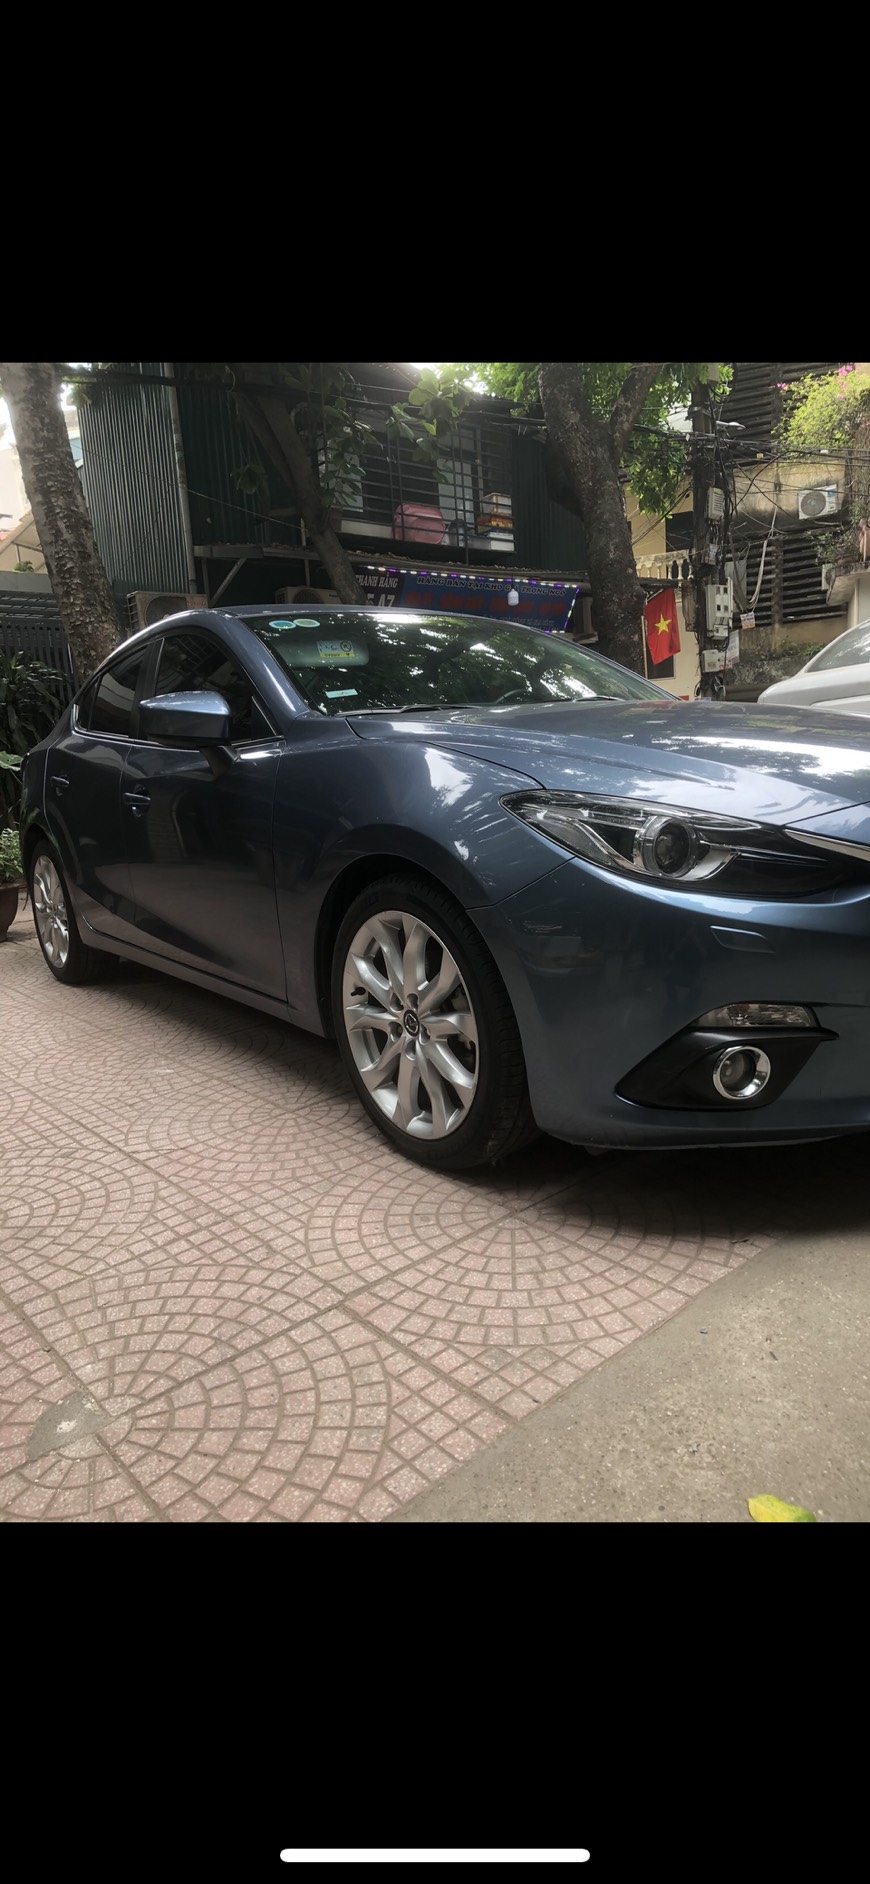 Chính chủ bán xe Mazda3 2.0 sản xuất 2016 c